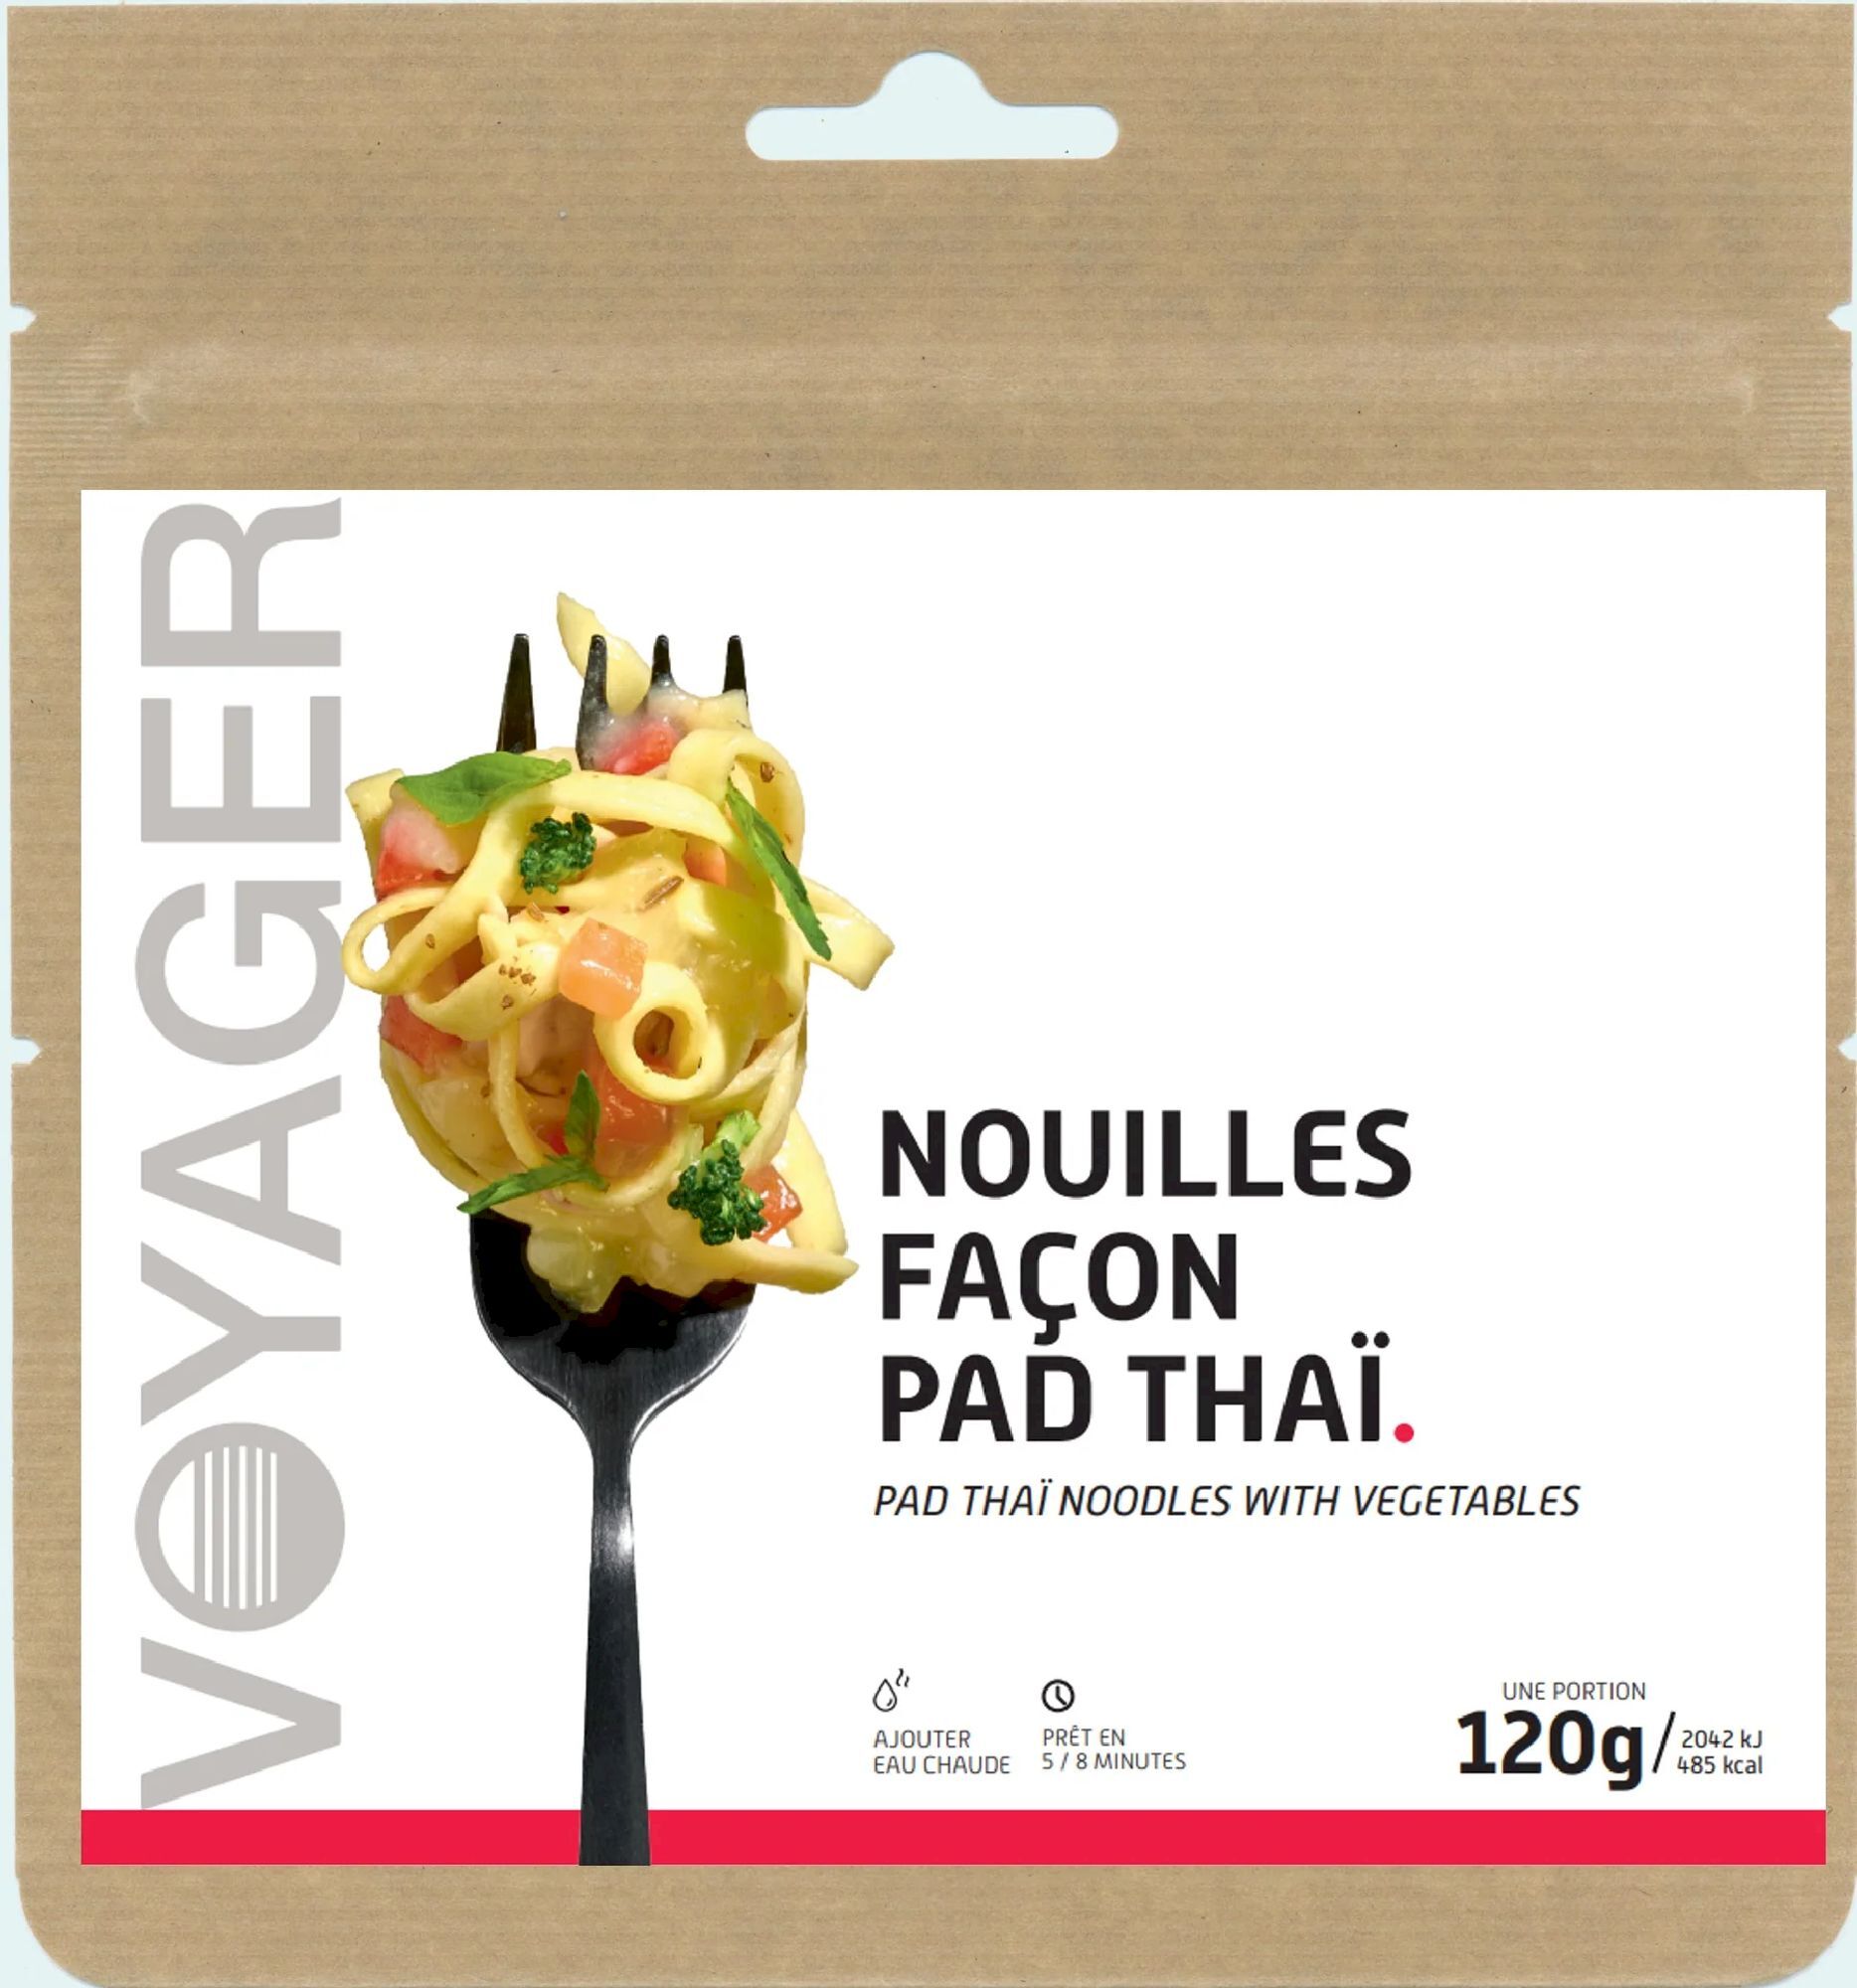 Voyager Nutrition Pad Thaï Noodles with Vegetables - Comidas liofilizadas | Hardloop